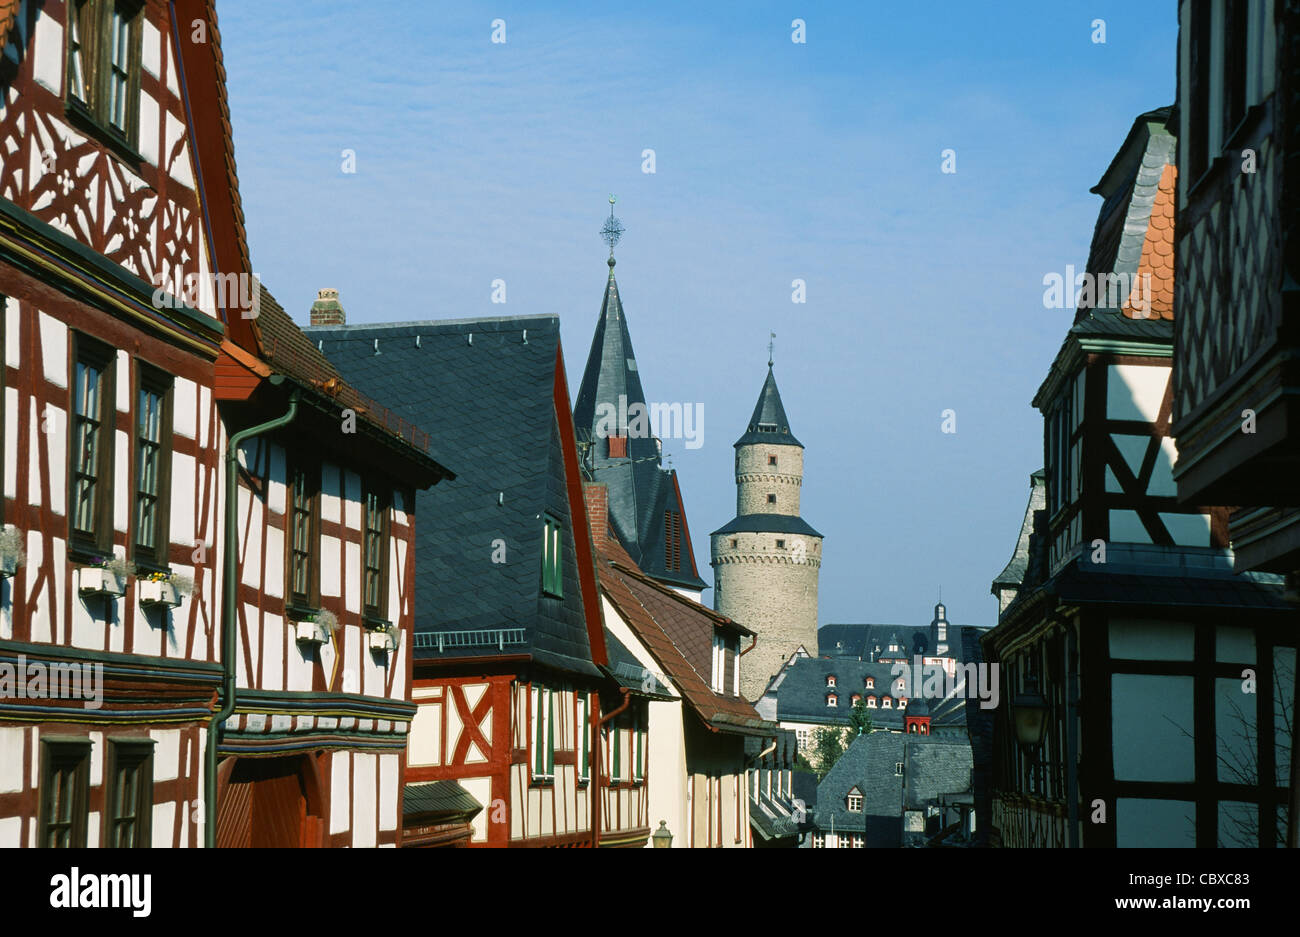 Die alte Stadt Idstein mit Fachwerkhäusern und dem Hexenturm Hexenturm gefunden in Hessen, Deutschland Stockfoto